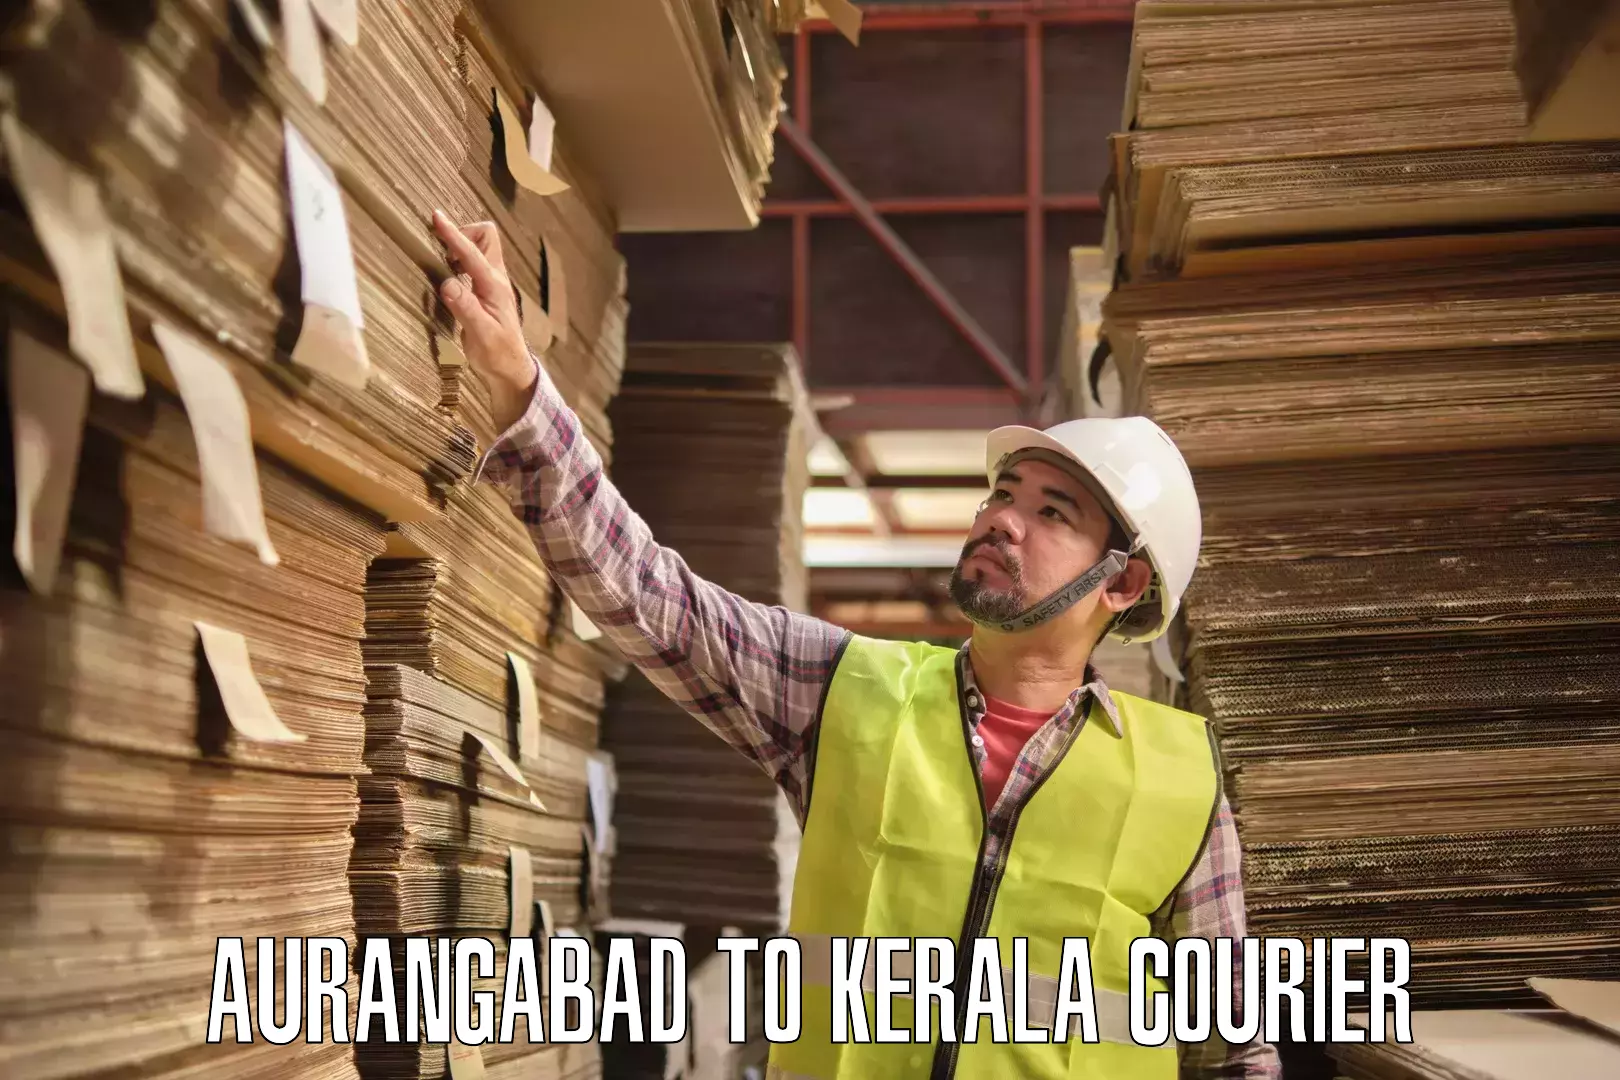 User-friendly courier app Aurangabad to Adoor